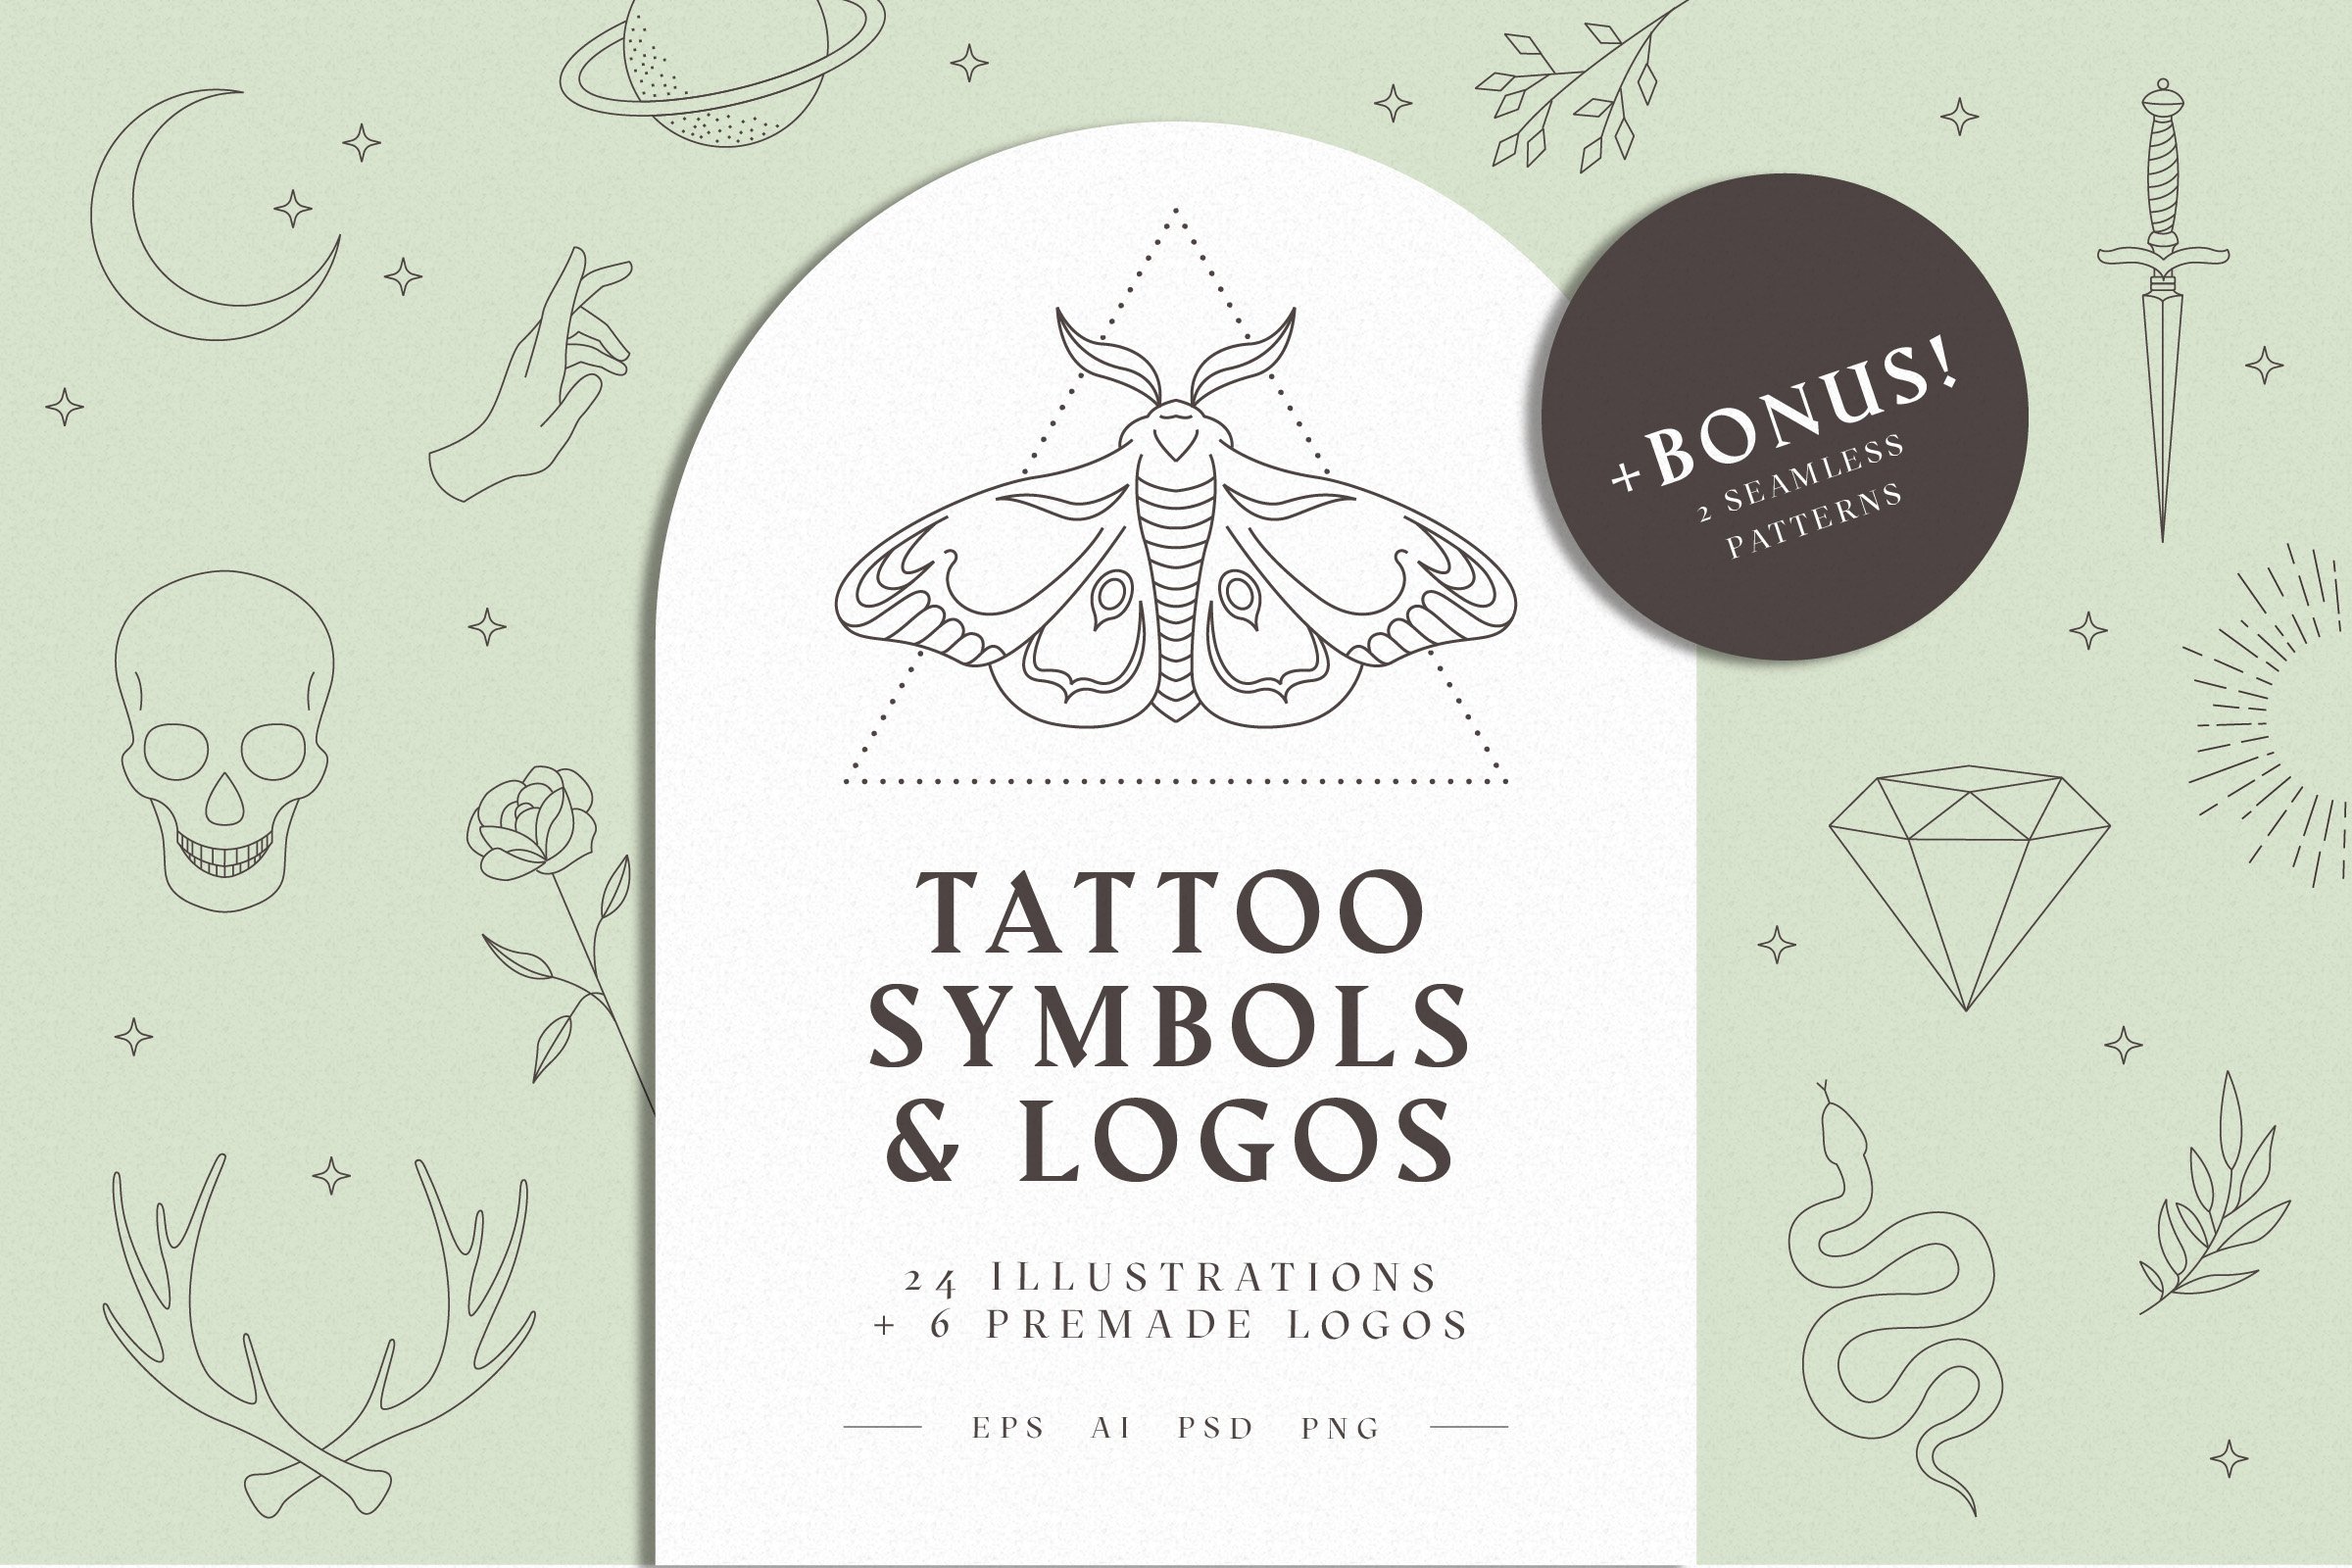 Home Symbol Geometry tattoo - Best Tattoo Ideas Gallery